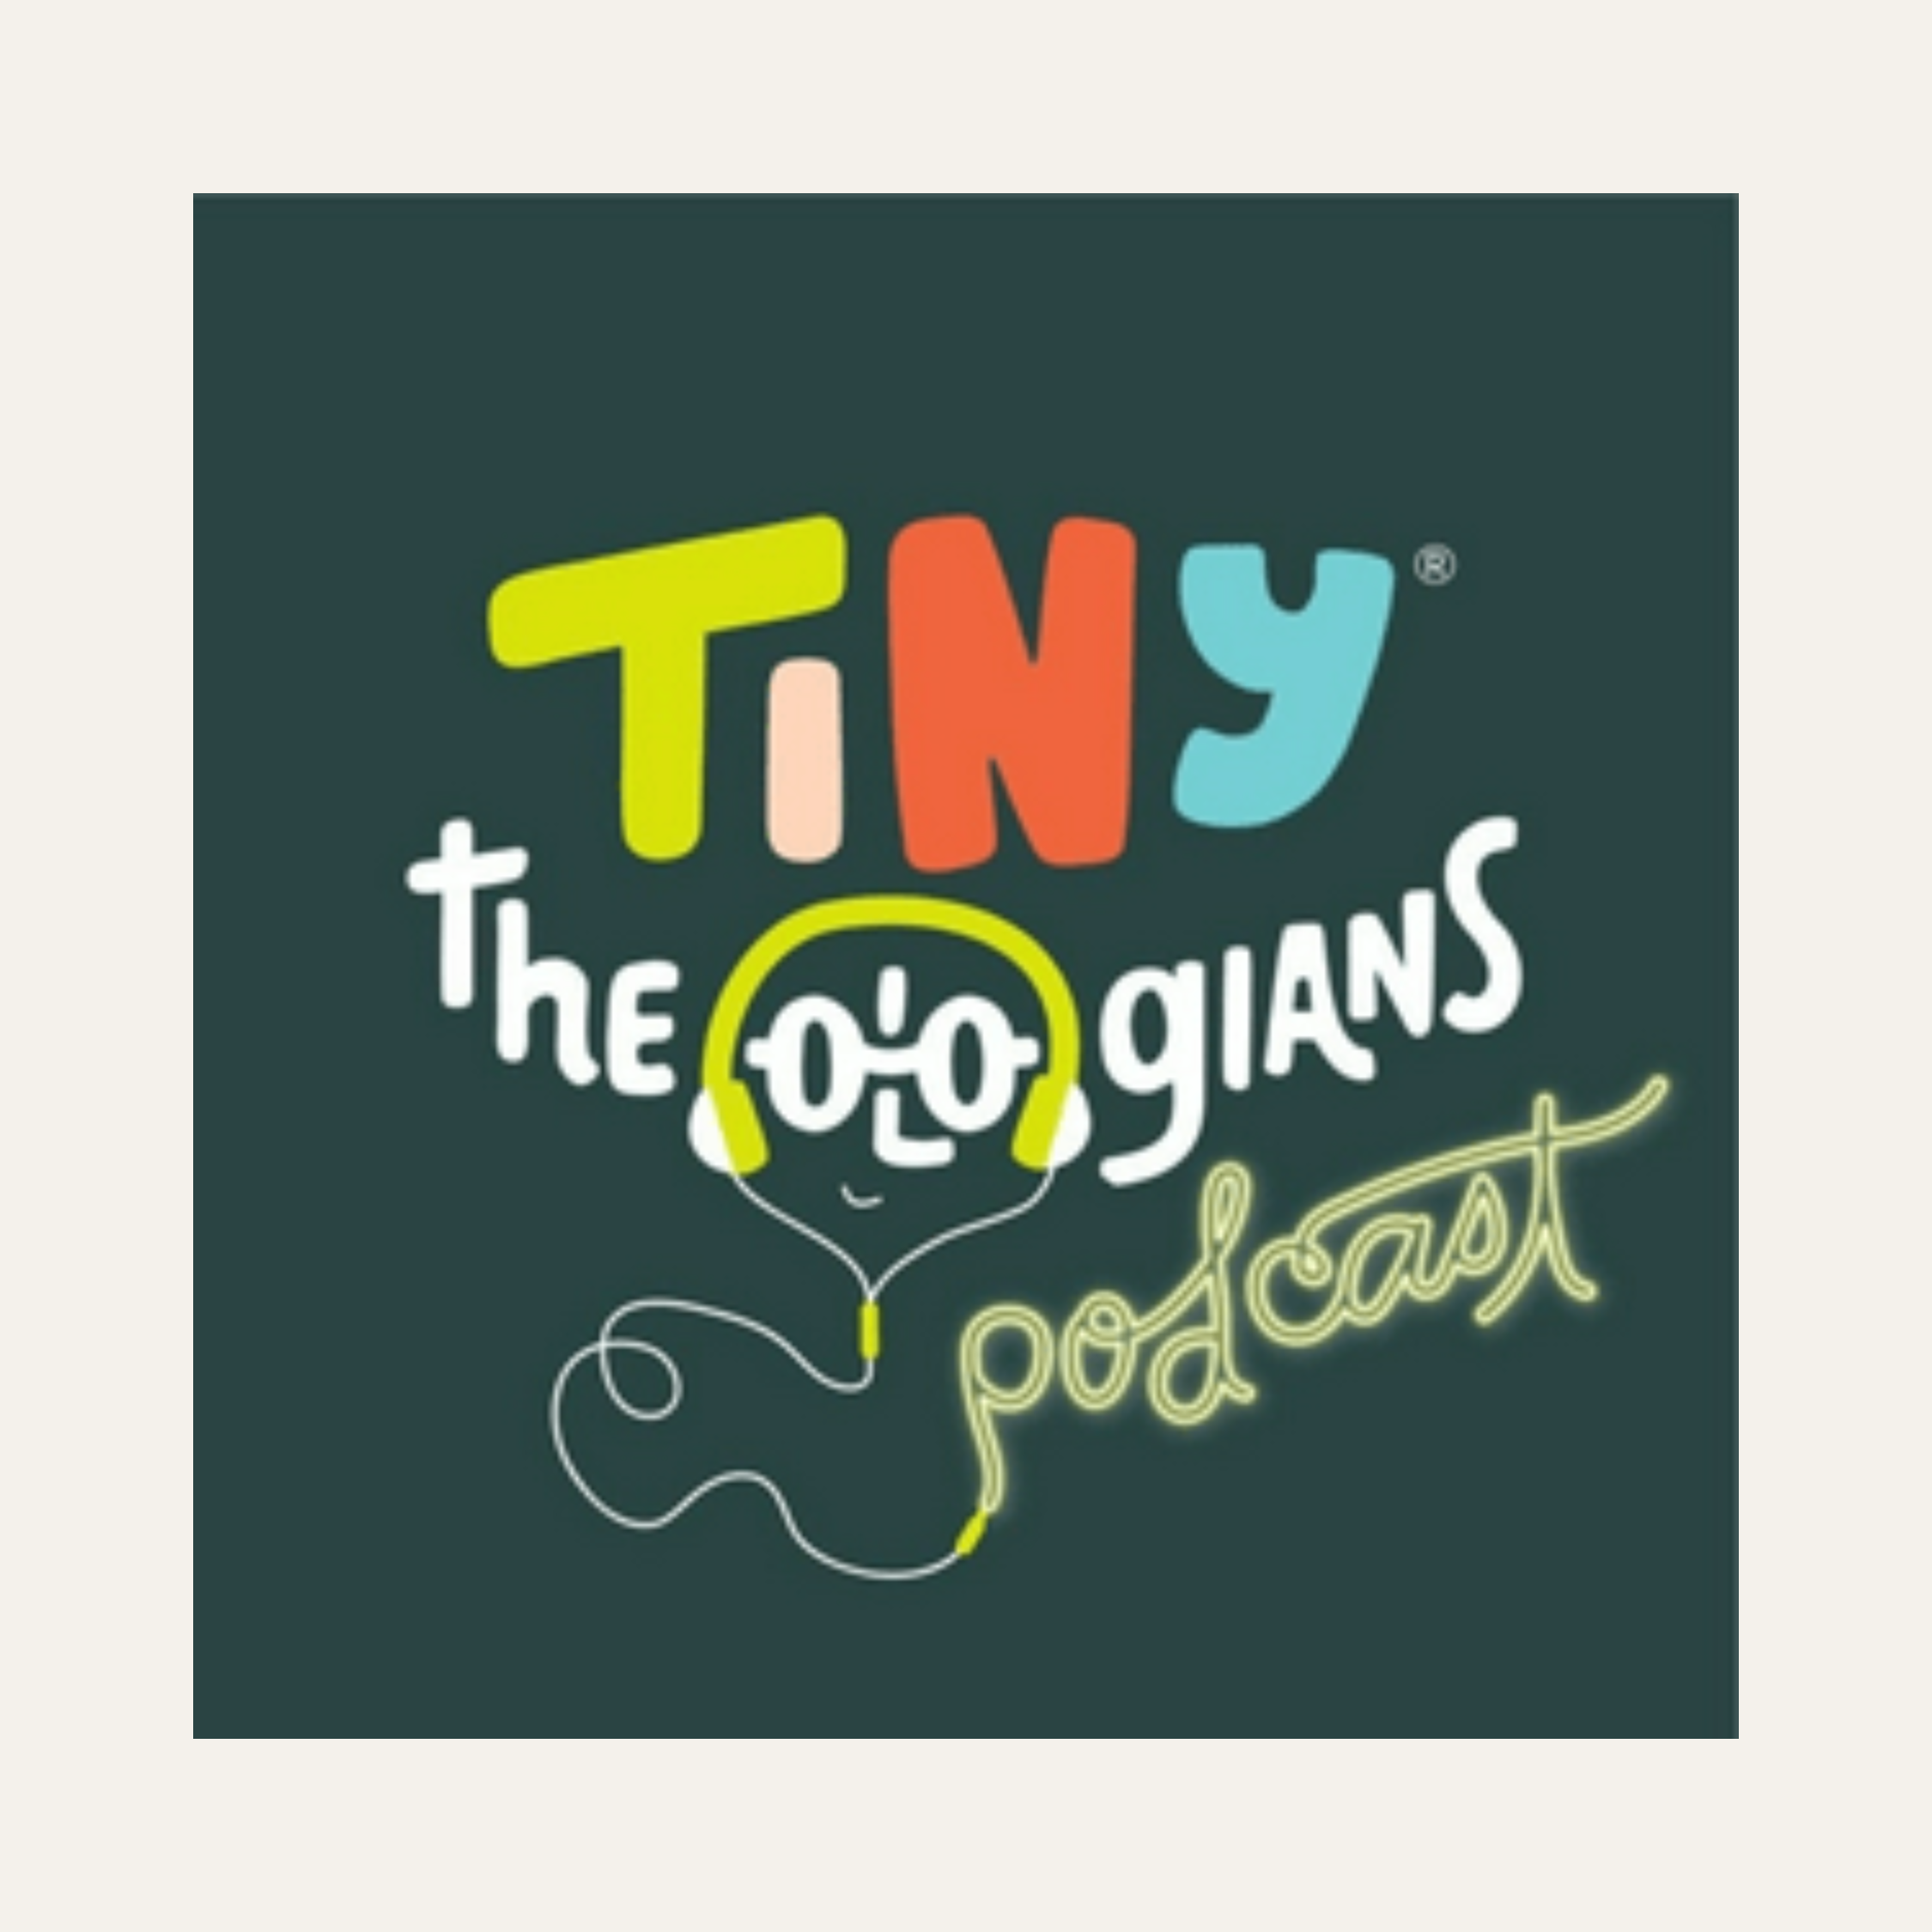 Tiny Theologians Podcast